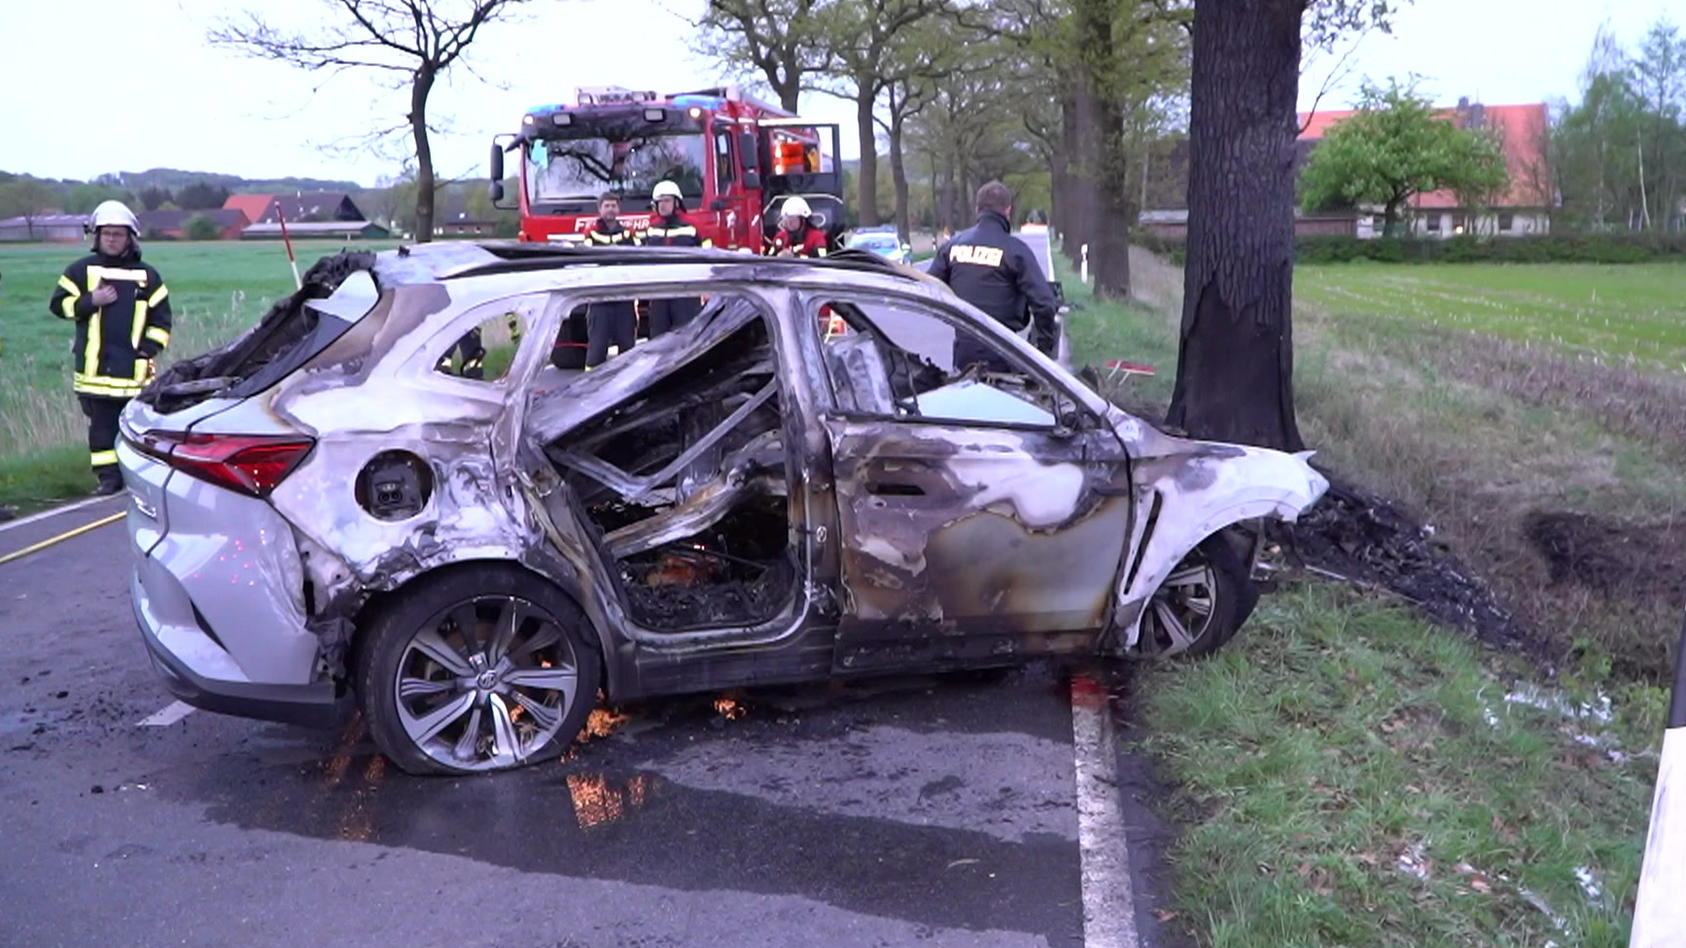 E-Auto kracht gegen Baum: Fahrzeug geht direkt in Flammen auf - zwei Tote!